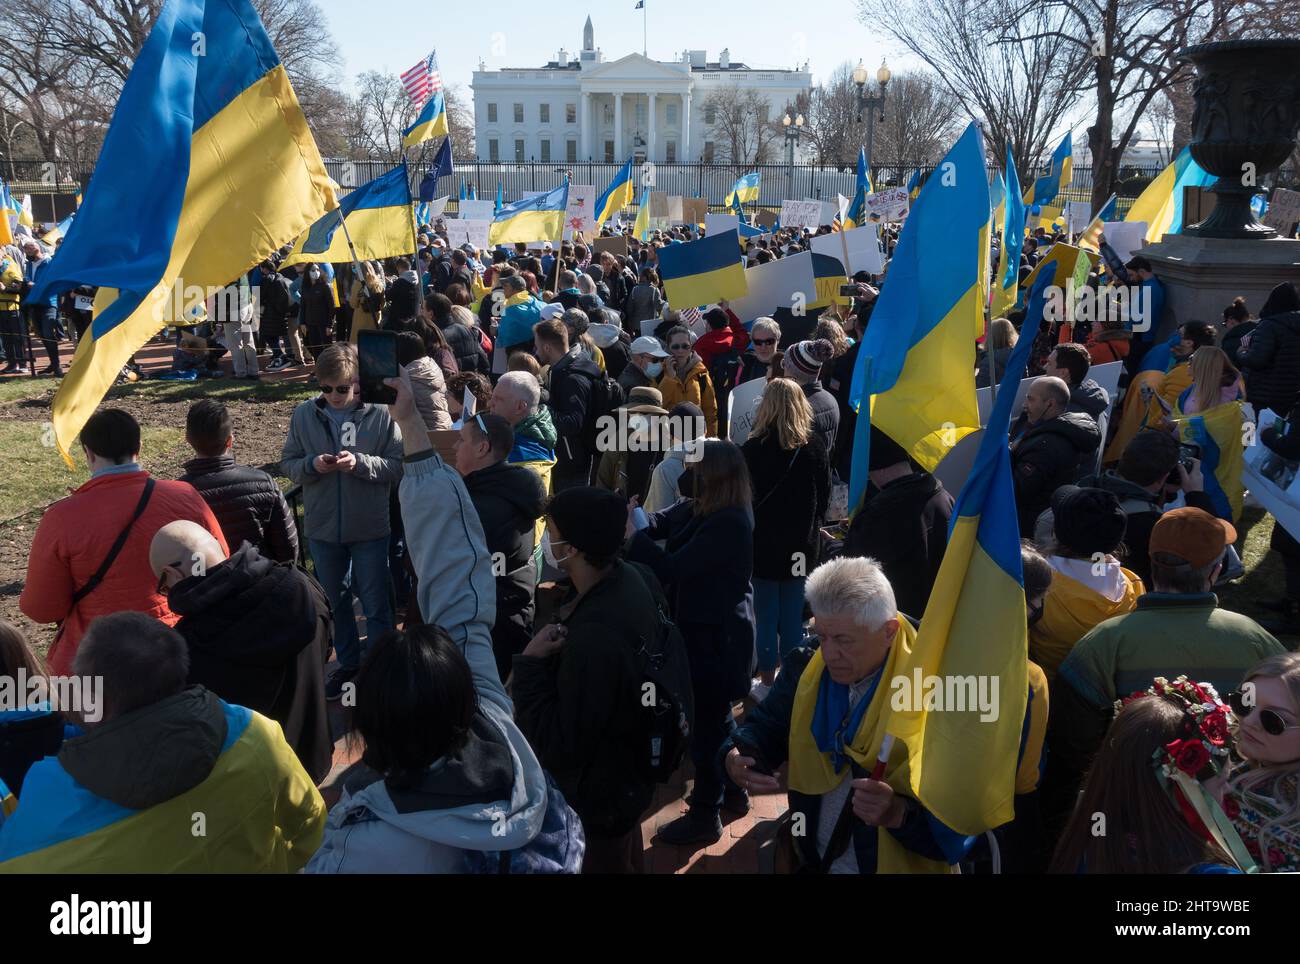 27 febbraio 2022: I sostenitori dell’Ucraina si radunano alla Casa Bianca per protestare contro l’invasione dell’Ucraina da parte della Russia e per implorare dal Presidente Biden e dalla NATO un’azione più forte contro Vladimir Putin e la Russia. Foto Stock